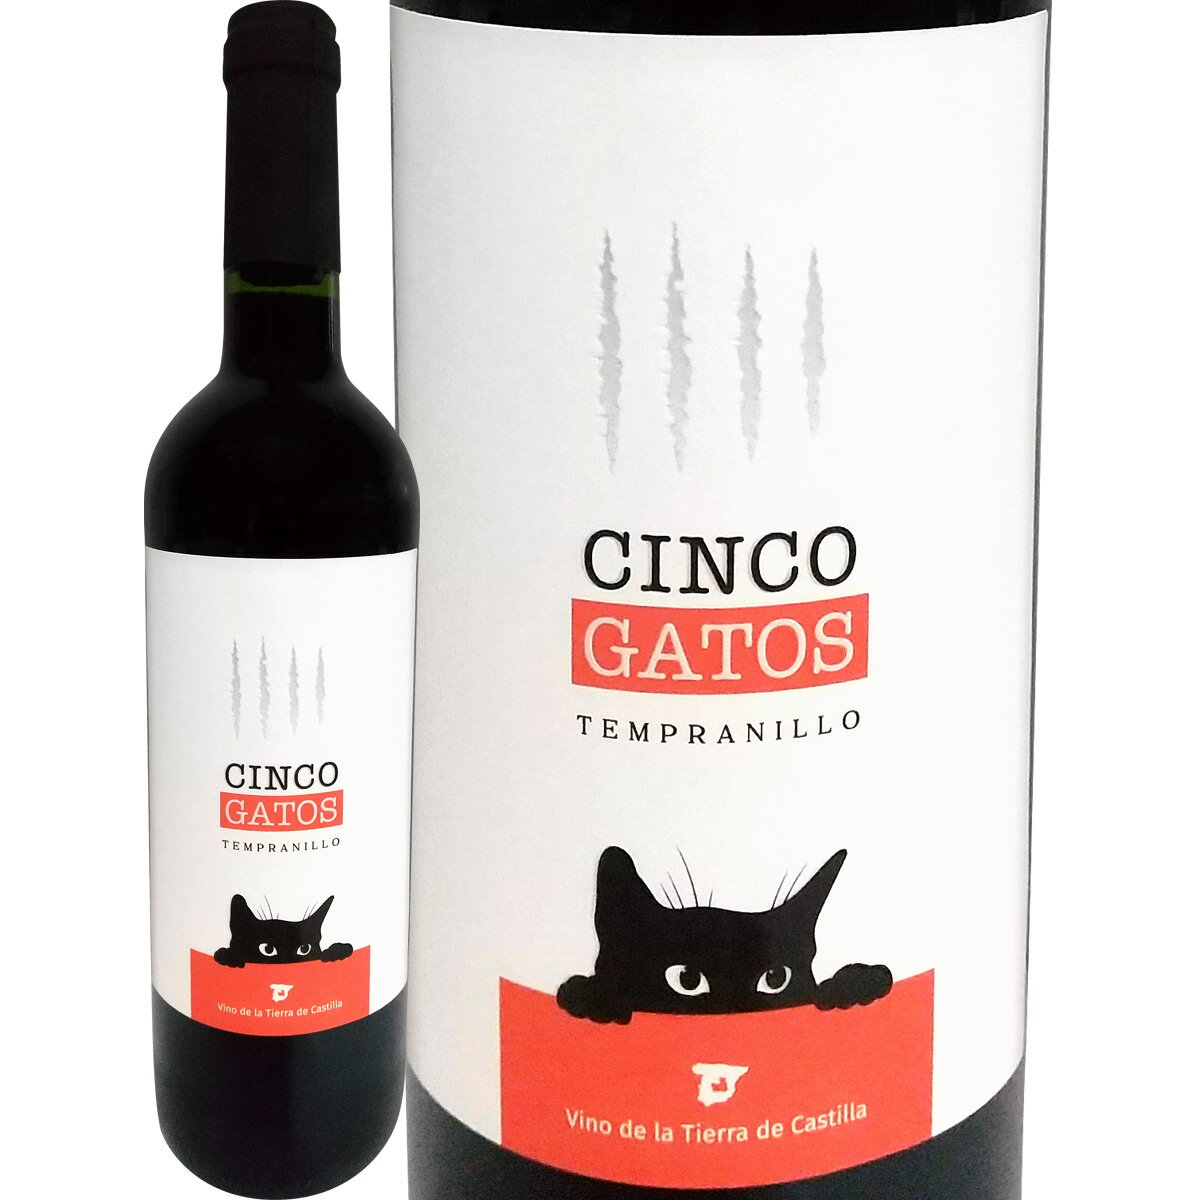 シンコ・ガトス・テンプラニーリョ【スペイン】【赤ワイン】【750ml】【ミディアムボディ】【辛口】【猫ラベル】【黒猫】【ラマンチャ】【ナバロ・ロペス】【Navarro Lopez】【フレンチオーク…